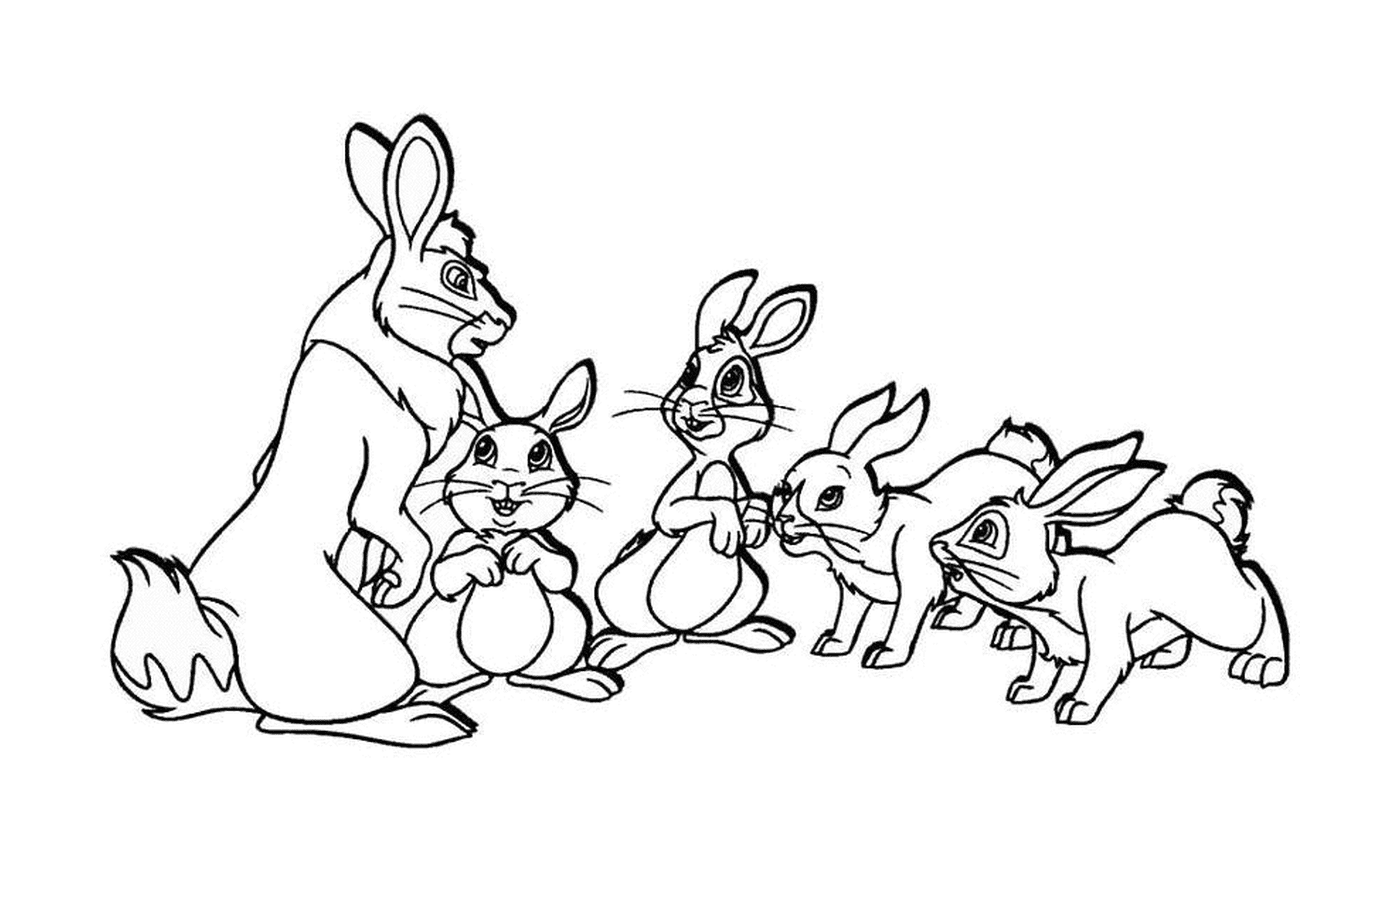  Группа мелких кроликов 